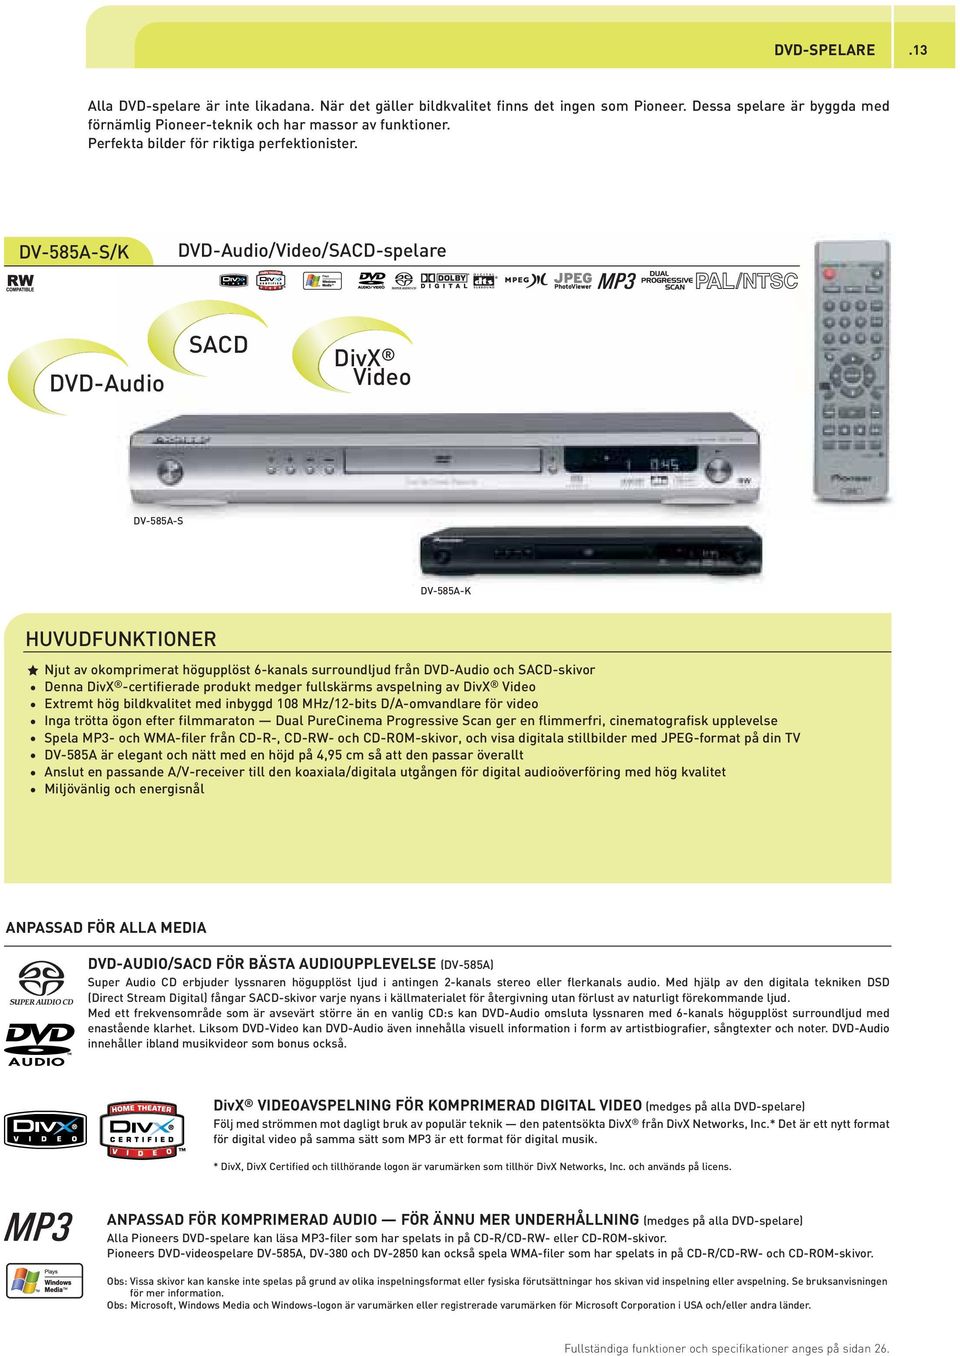 DV-585A-S/K DVD-Audio/Video/SACD-spelare b/a DVD-Audio SACD DivX Video DV-585A-S DV-585A-K Njut av okomprimerat högupplöst 6-kanals surroundljud från DVD-Audio och SACD-skivor Denna DivX